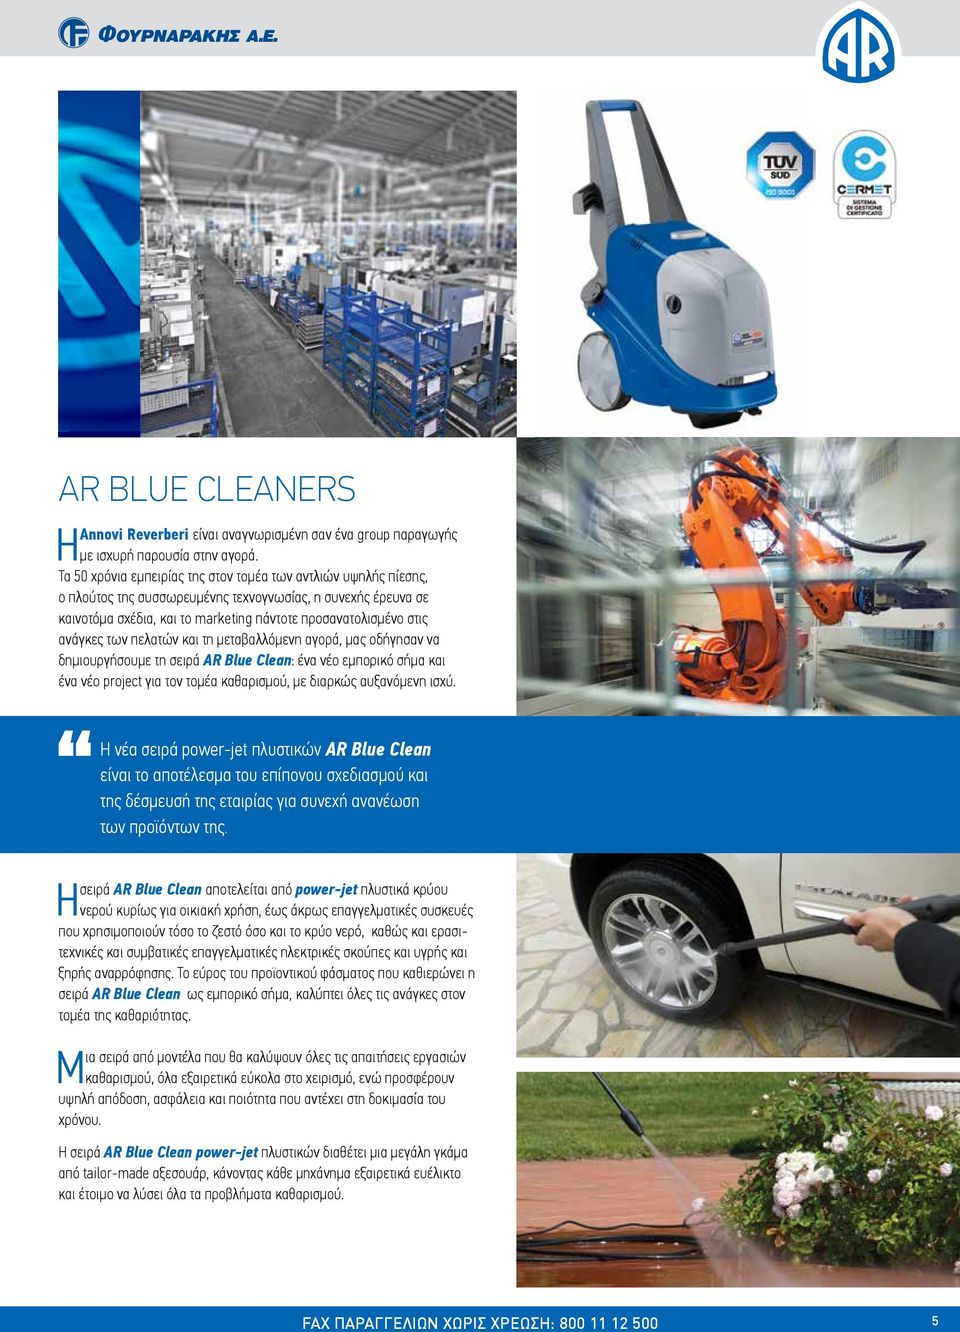 των πελατών και τη μεταβαλλόμενη αγορά, μας οδήγησαν να δημιουργήσουμε τη σειρά AR Blue Clean: ένα νέο εμπορικό σήμα και ένα νέο project για τον τομέα καθαρισμού, με διαρκώς αυξανόμενη ισχύ.